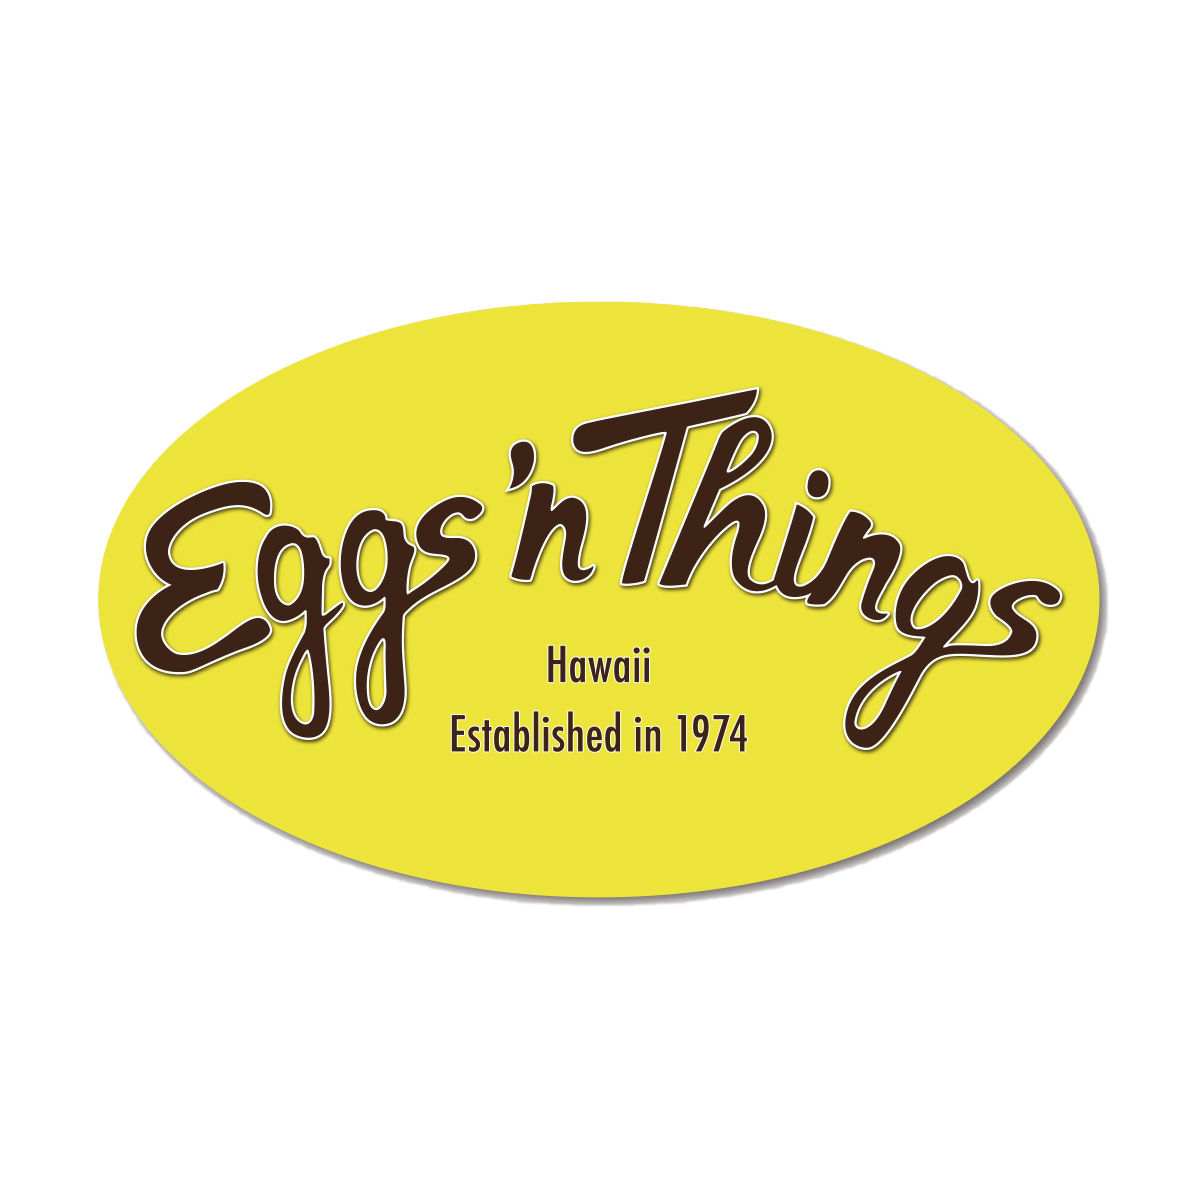 Eggs N Things.png